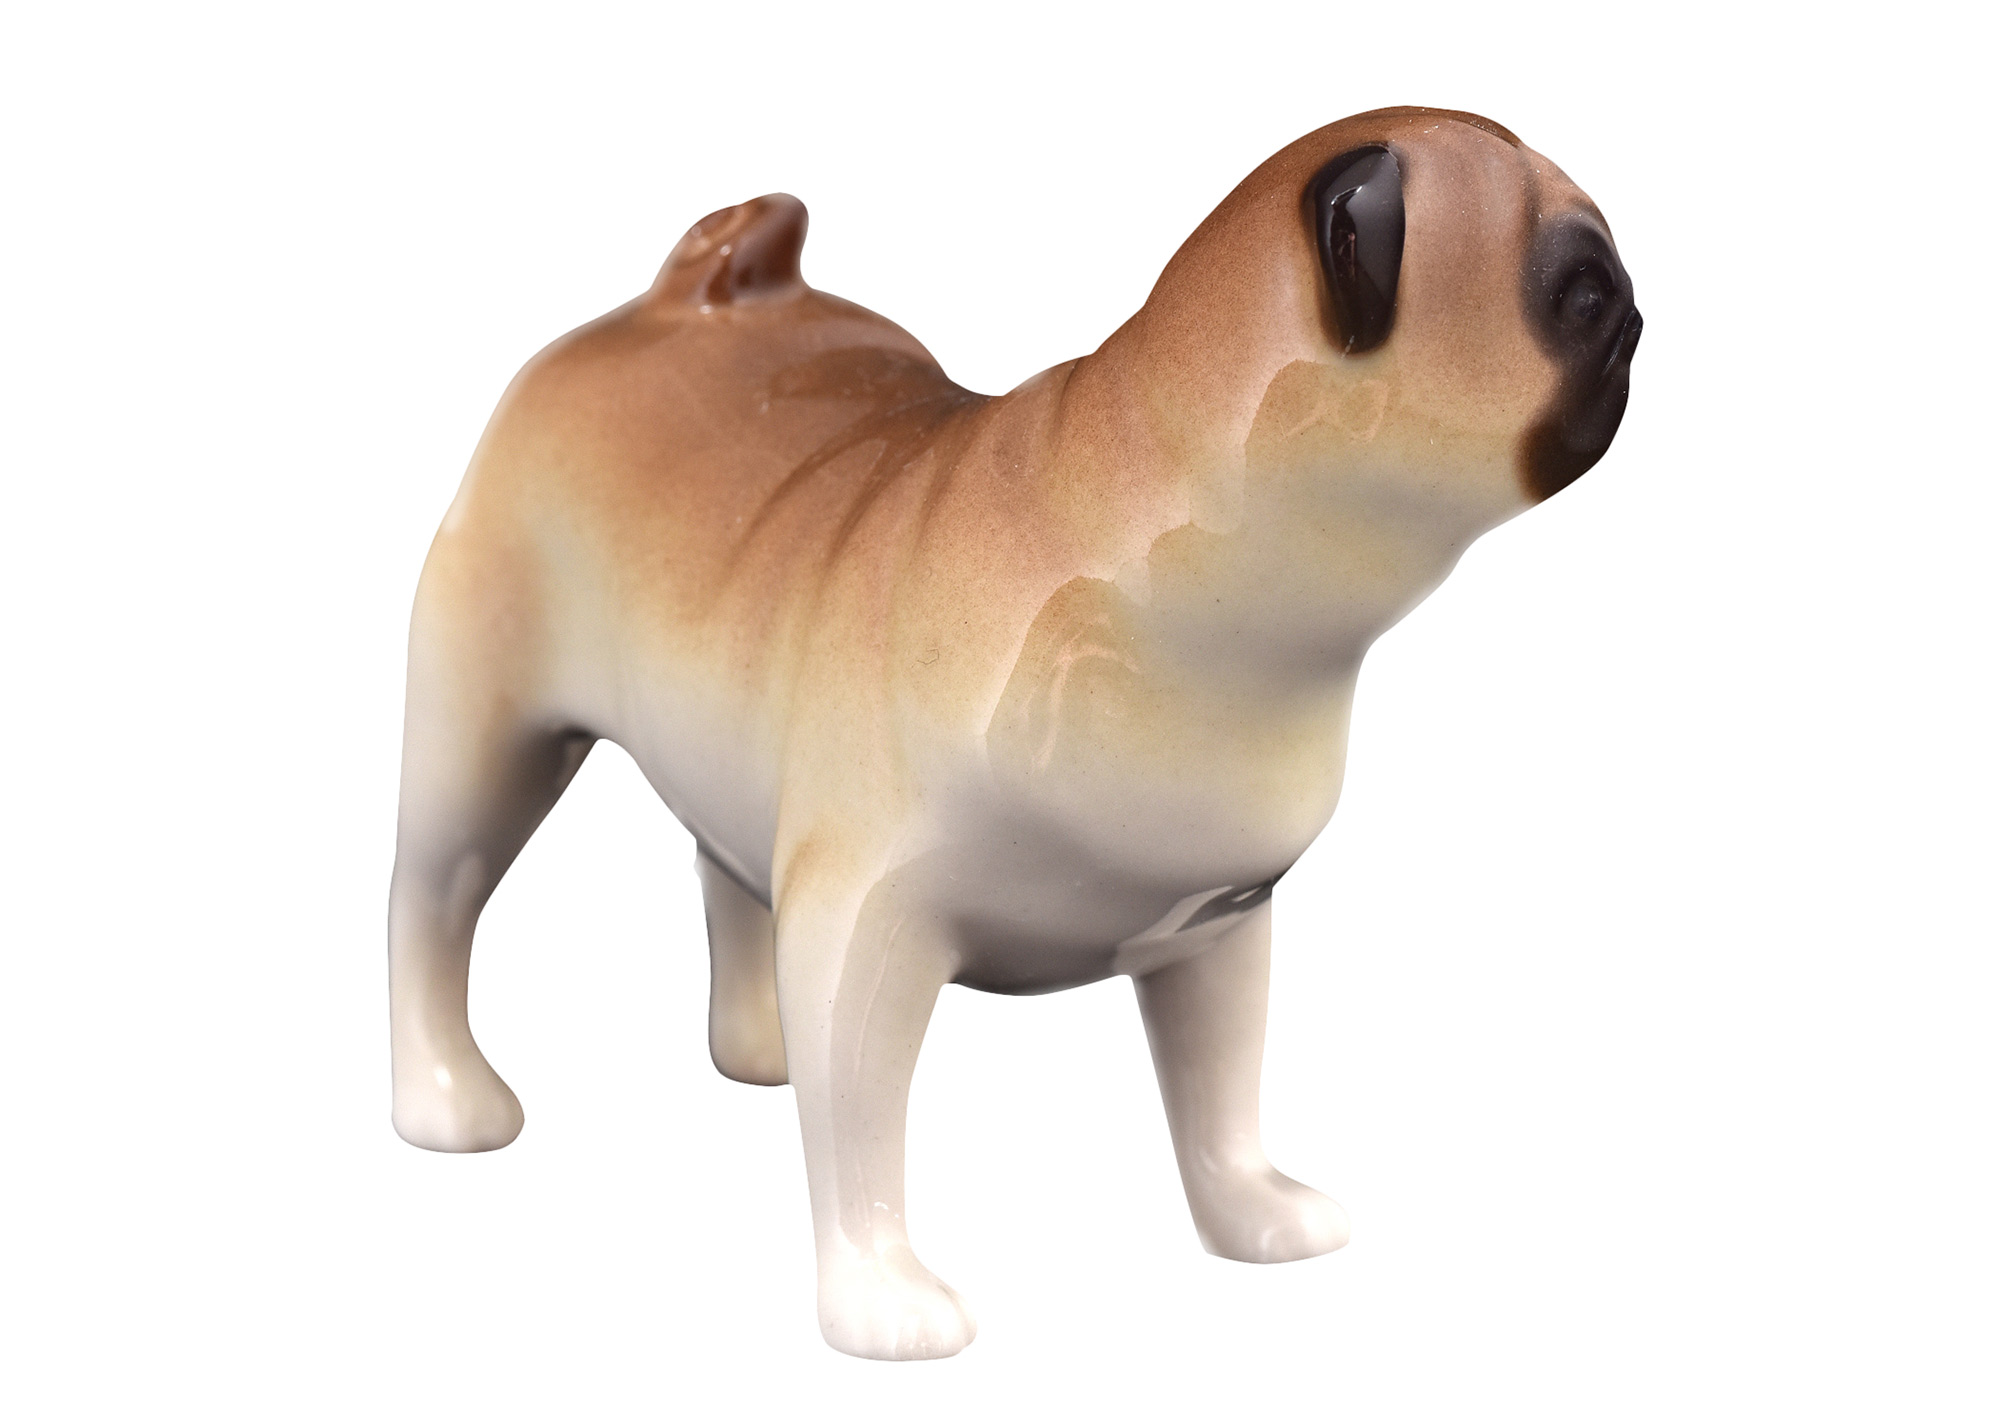 Buy Standing Pug Dog 'Archie' Porcelain Figurine 2.6"x3.4" at GoldenCockerel.com